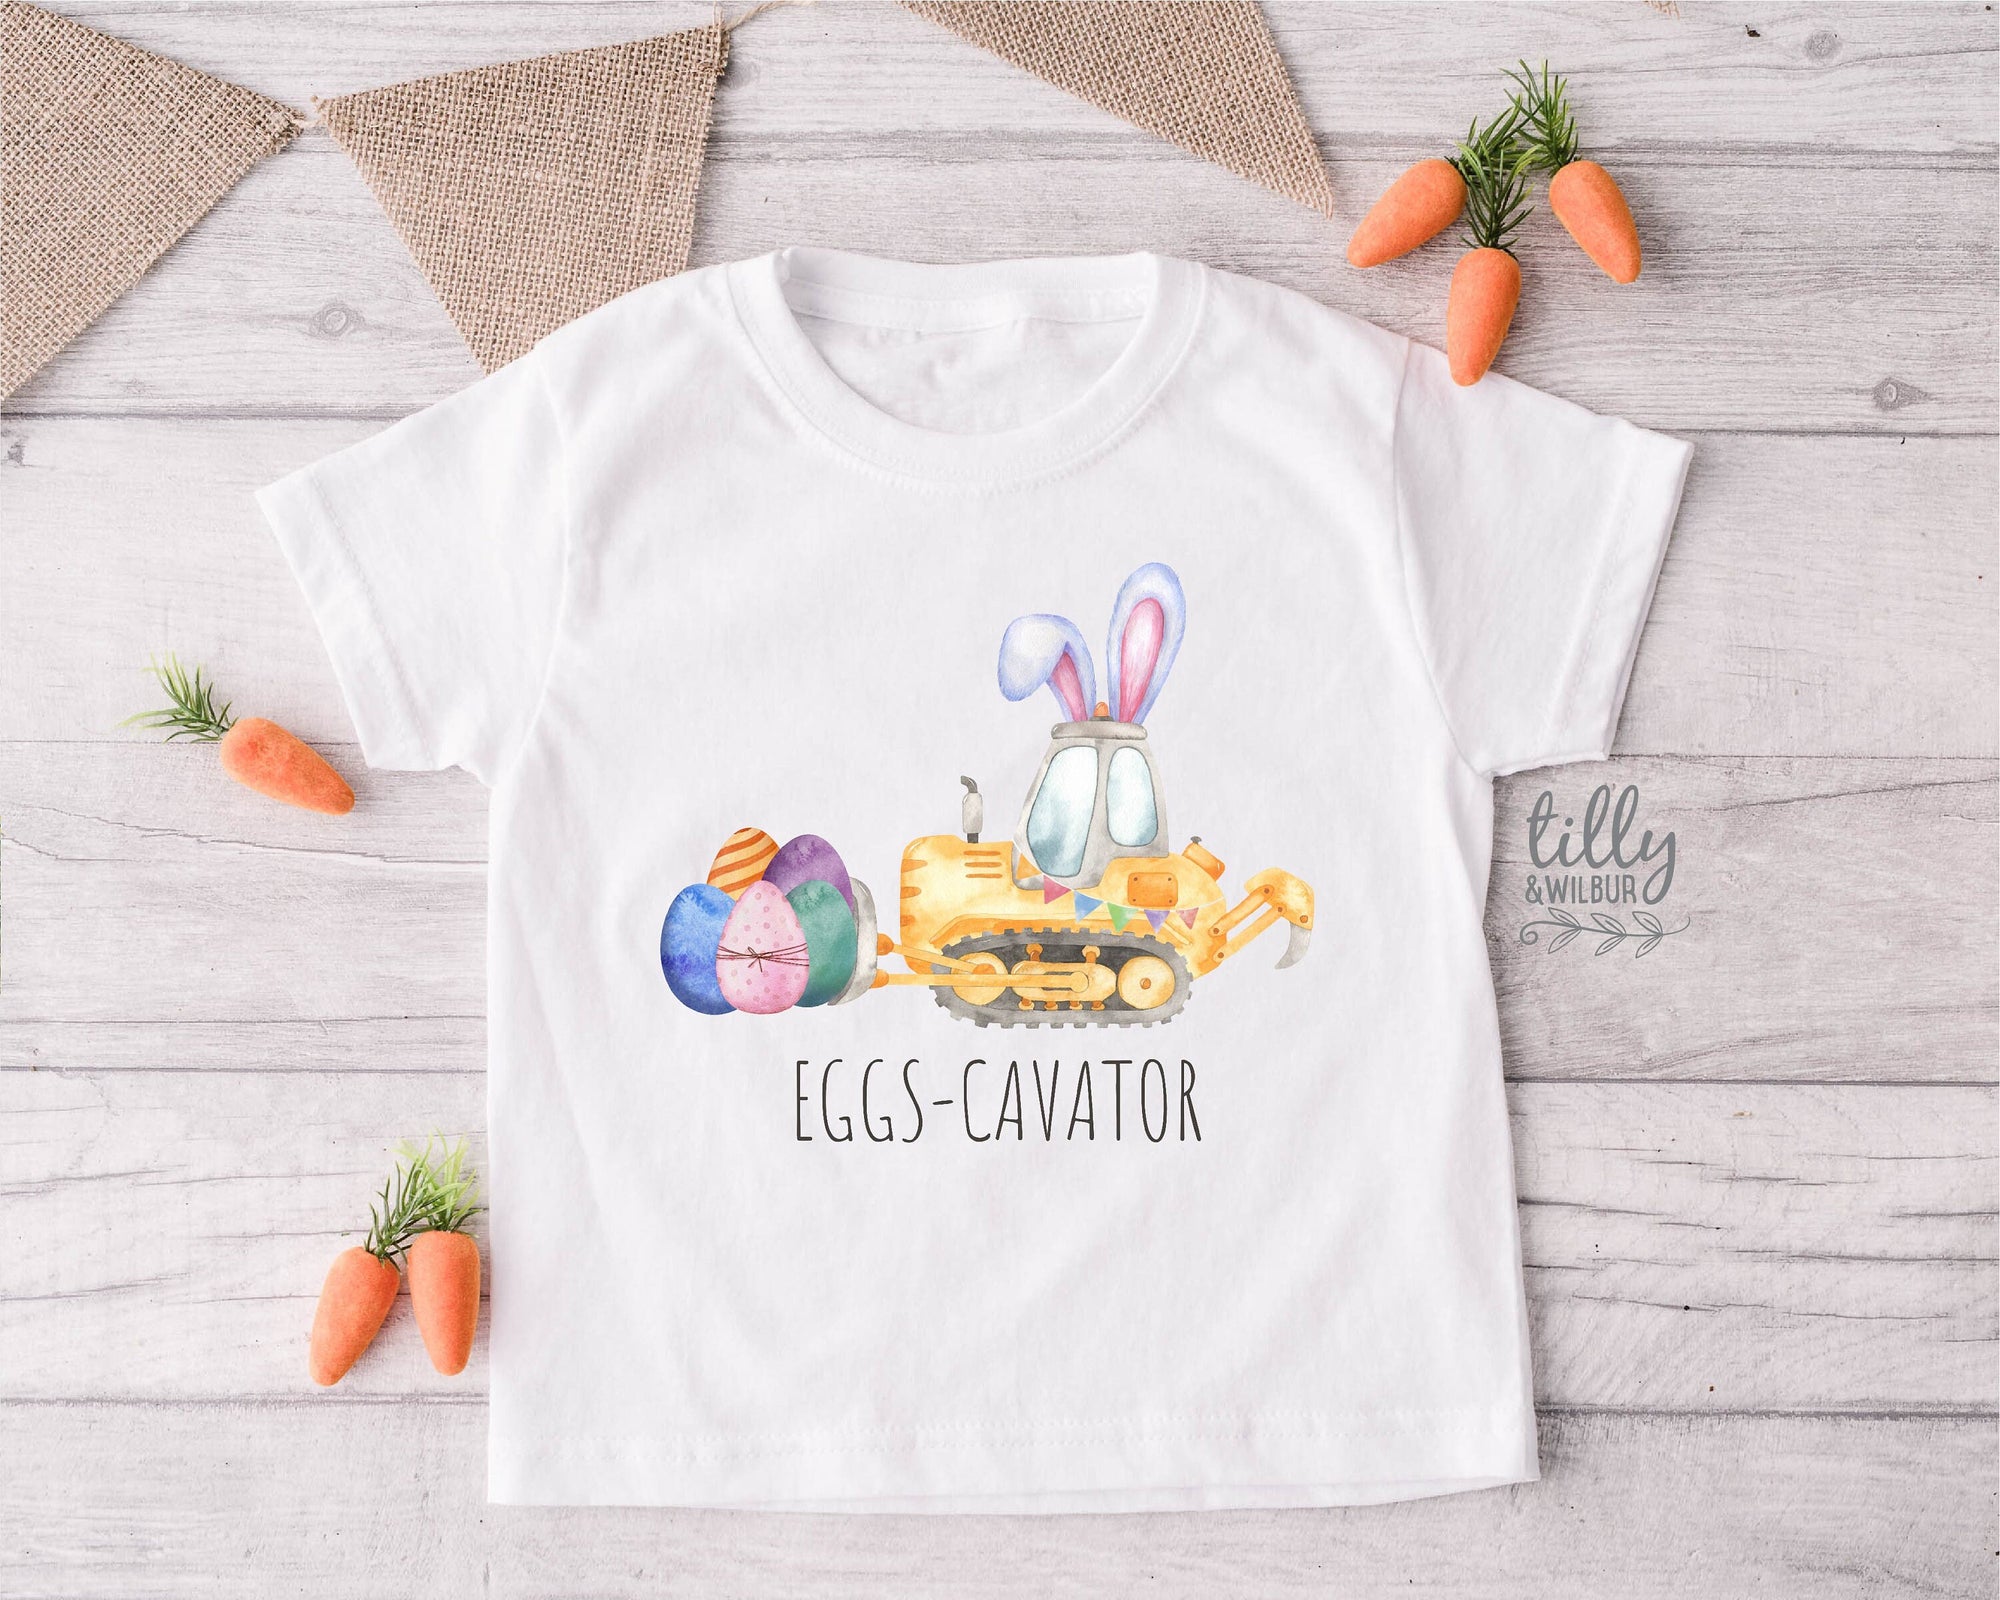 Easter T-Shirt, Eggs-Cavator T-Shirt, Eggs-Cavator Easter T-Shirt, Easter Eggs-cavator Shirt, Egg Hunt, Easter Gift, Construction, Excavator